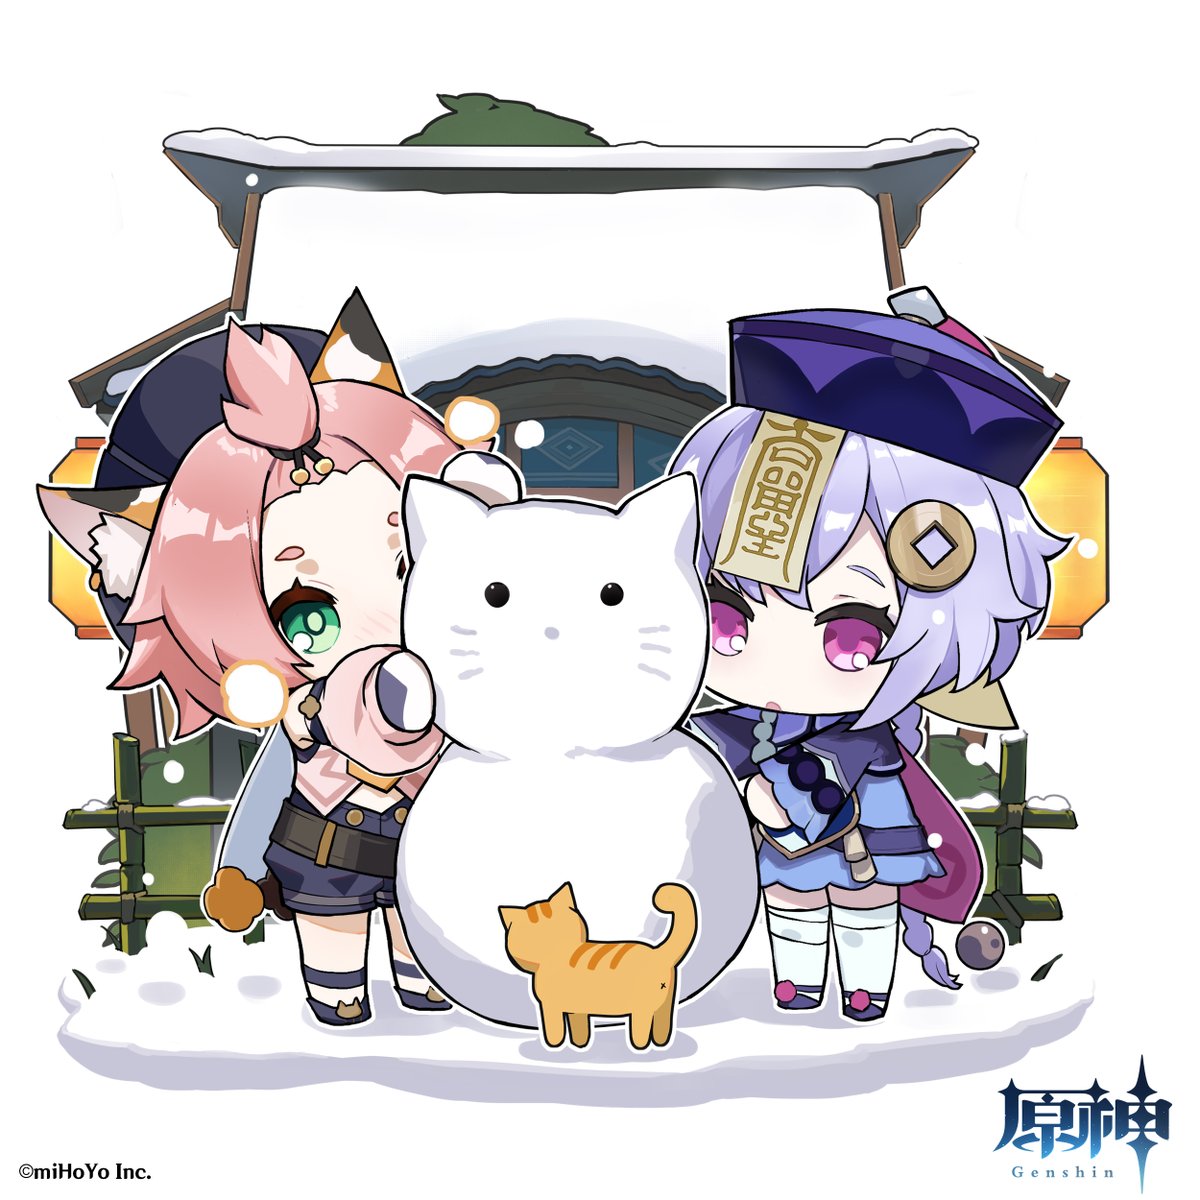 原神 Genshin 公式 海灯祭ミニイラスト 雪だるま 冷たい 子猫 可愛い お祭り 楽しい 原神 Genshin